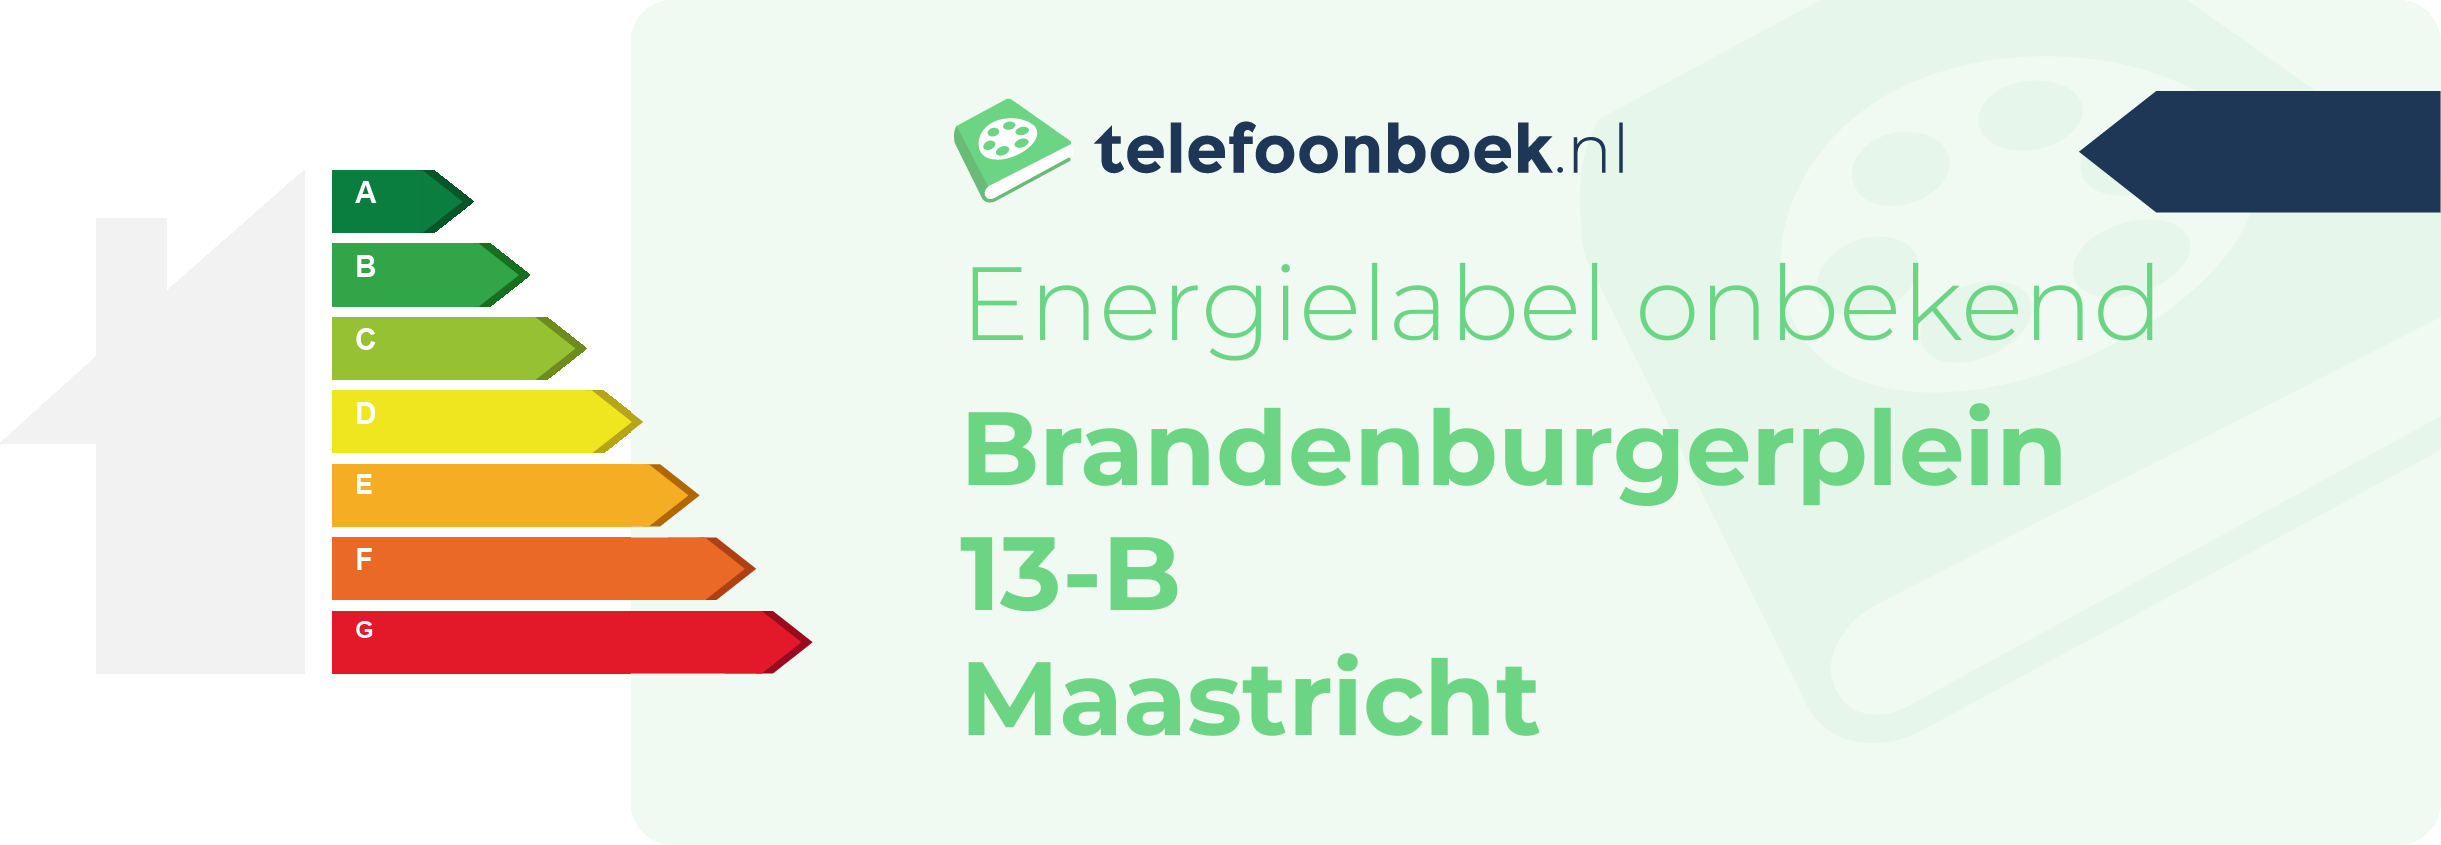 Energielabel Brandenburgerplein 13-B Maastricht